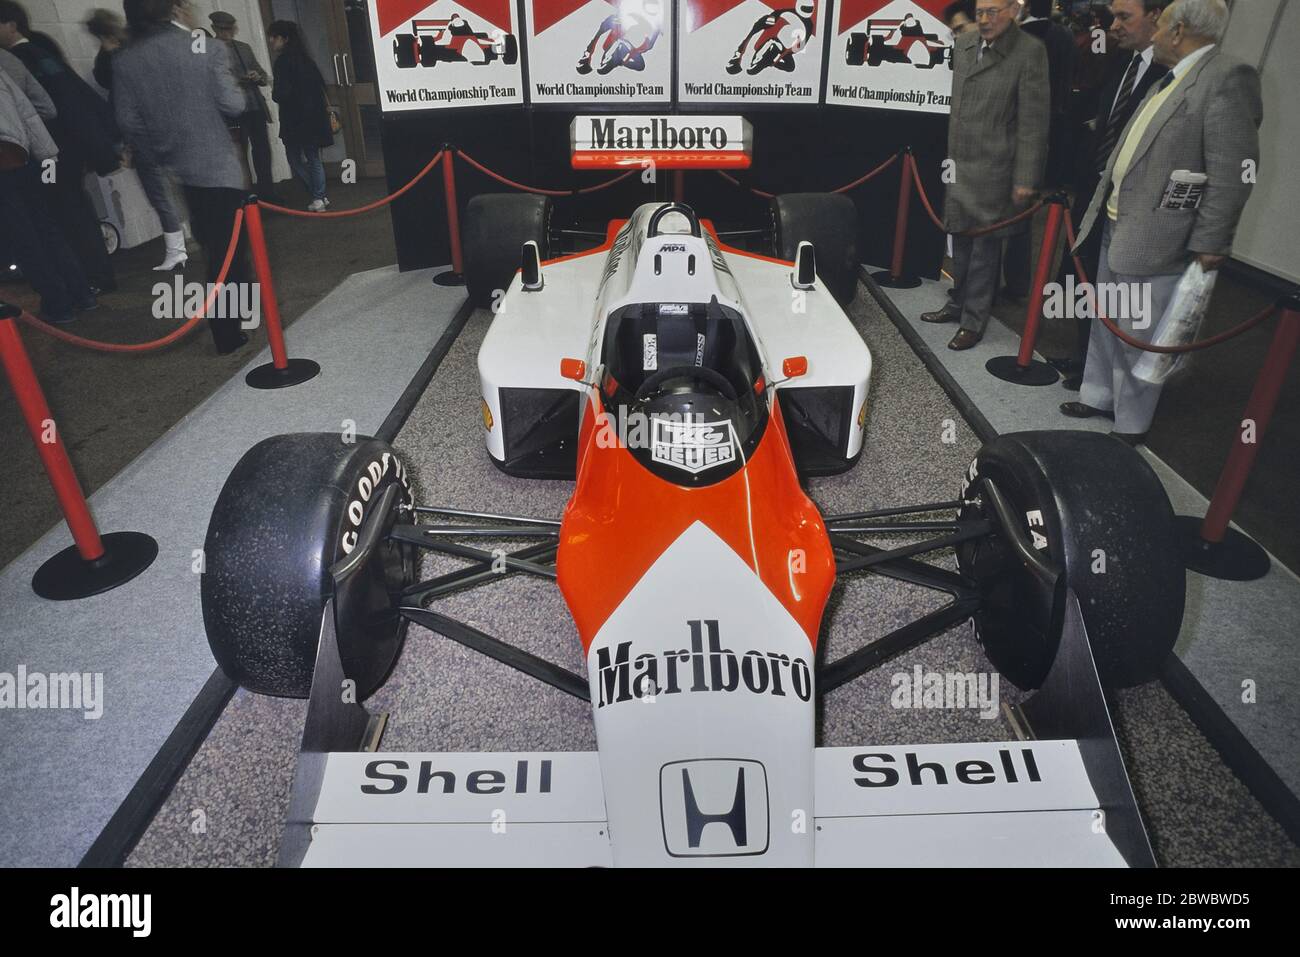 Der McLaren MP4/3 oder MP4/3B Formel 1 Rennwagen, der von McLaren International während der Formel 1 Weltmeisterschaft 1987 gebaut und betrieben wurde und auf DER RENNWAGEN-SHOW 1989 AUSGESTELLT ist. Olympia 2, London, England, GB. 4.-8. Januar 1989 Stockfoto